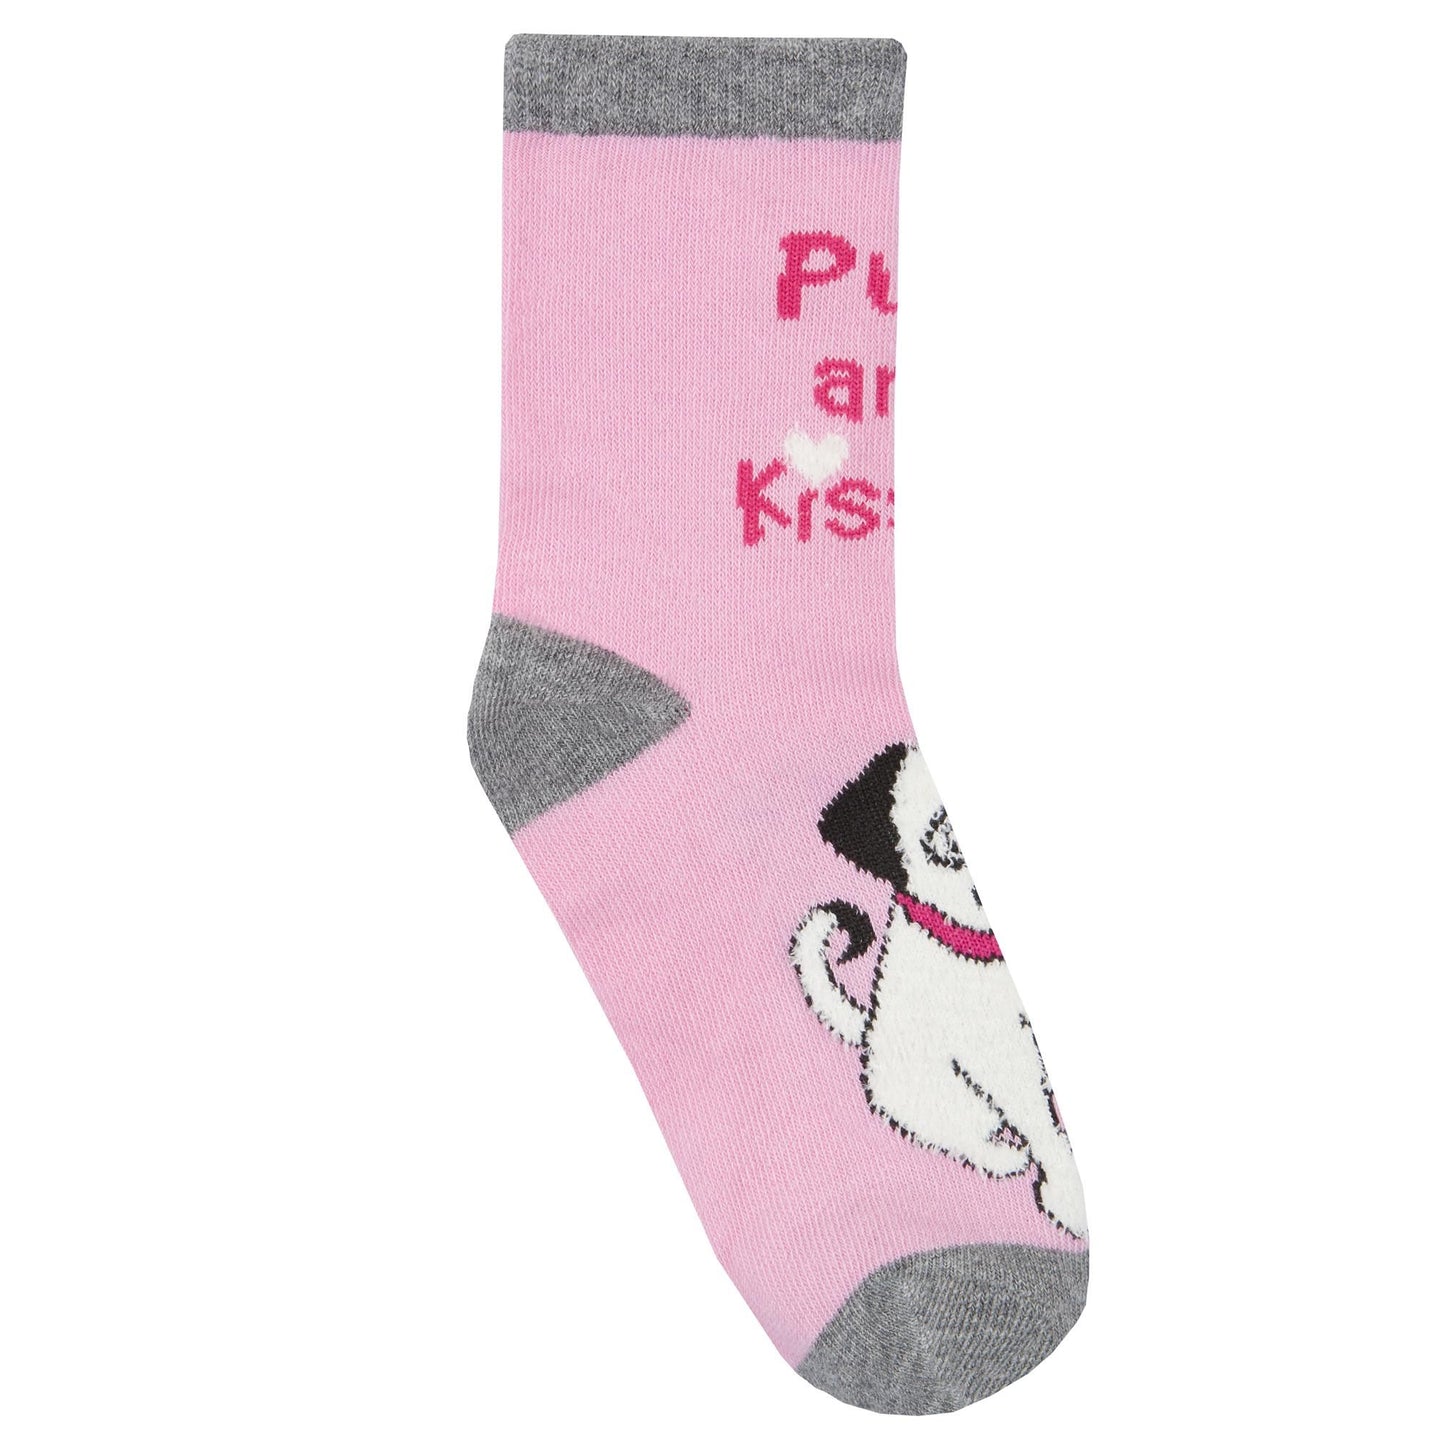 Childrens 3 Pk of Dog or Cat Socks